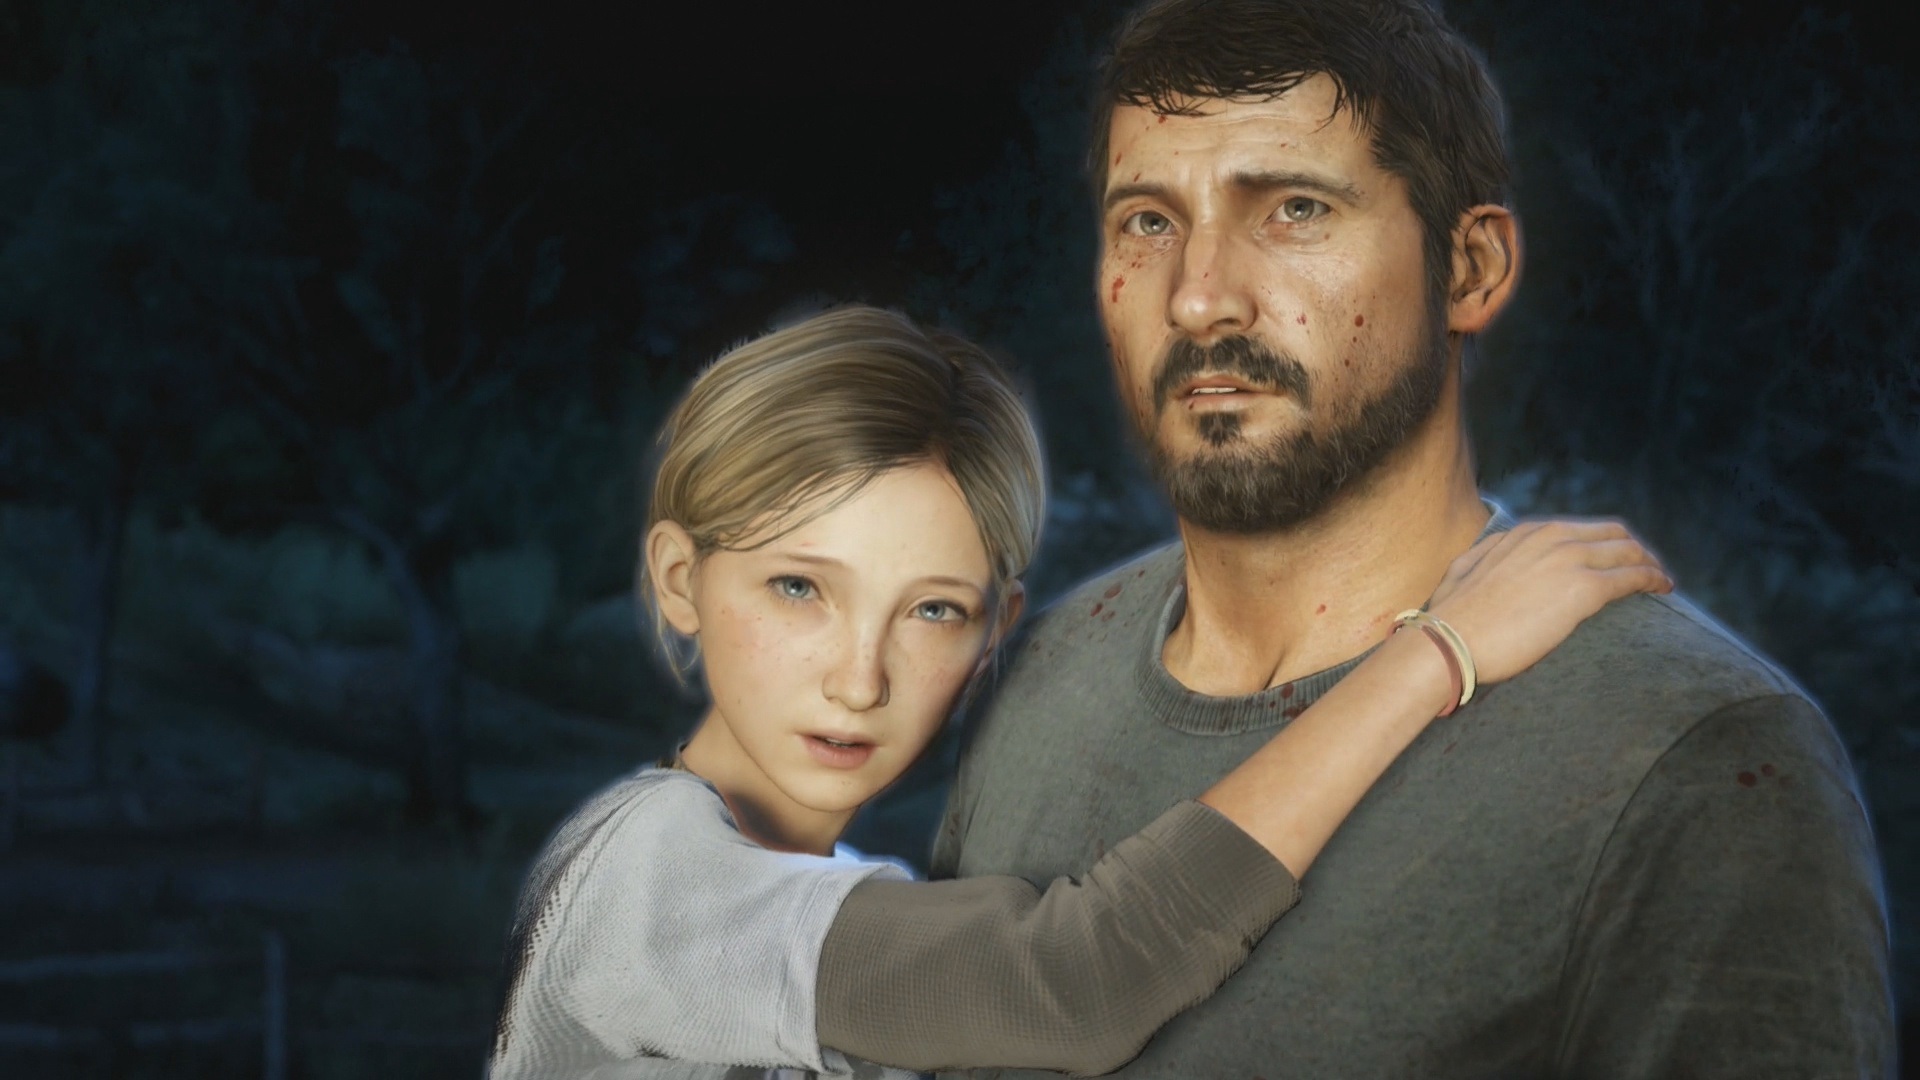 Joel and his daughter